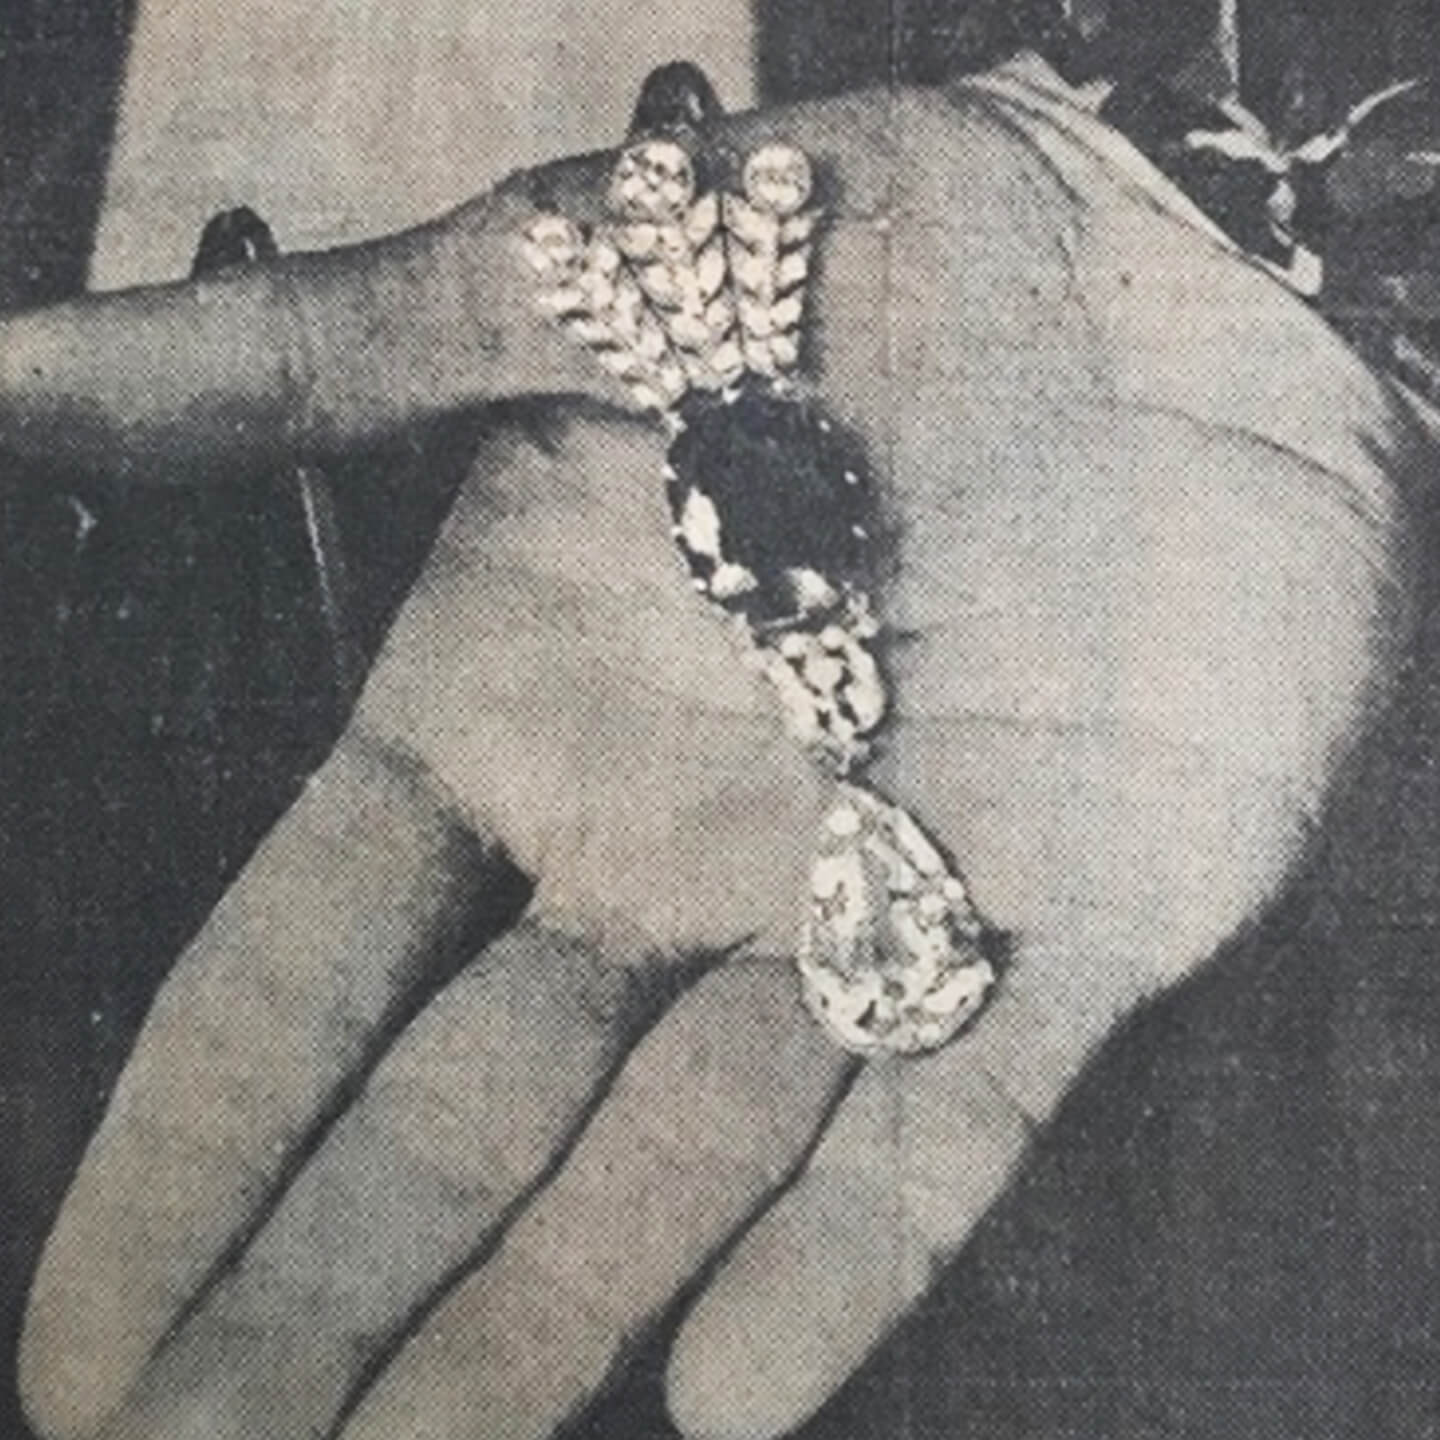 エステート・ジュエリーのオークションで販売された美しいネックレスを記事にした、新聞の切り抜きのクローズアップ